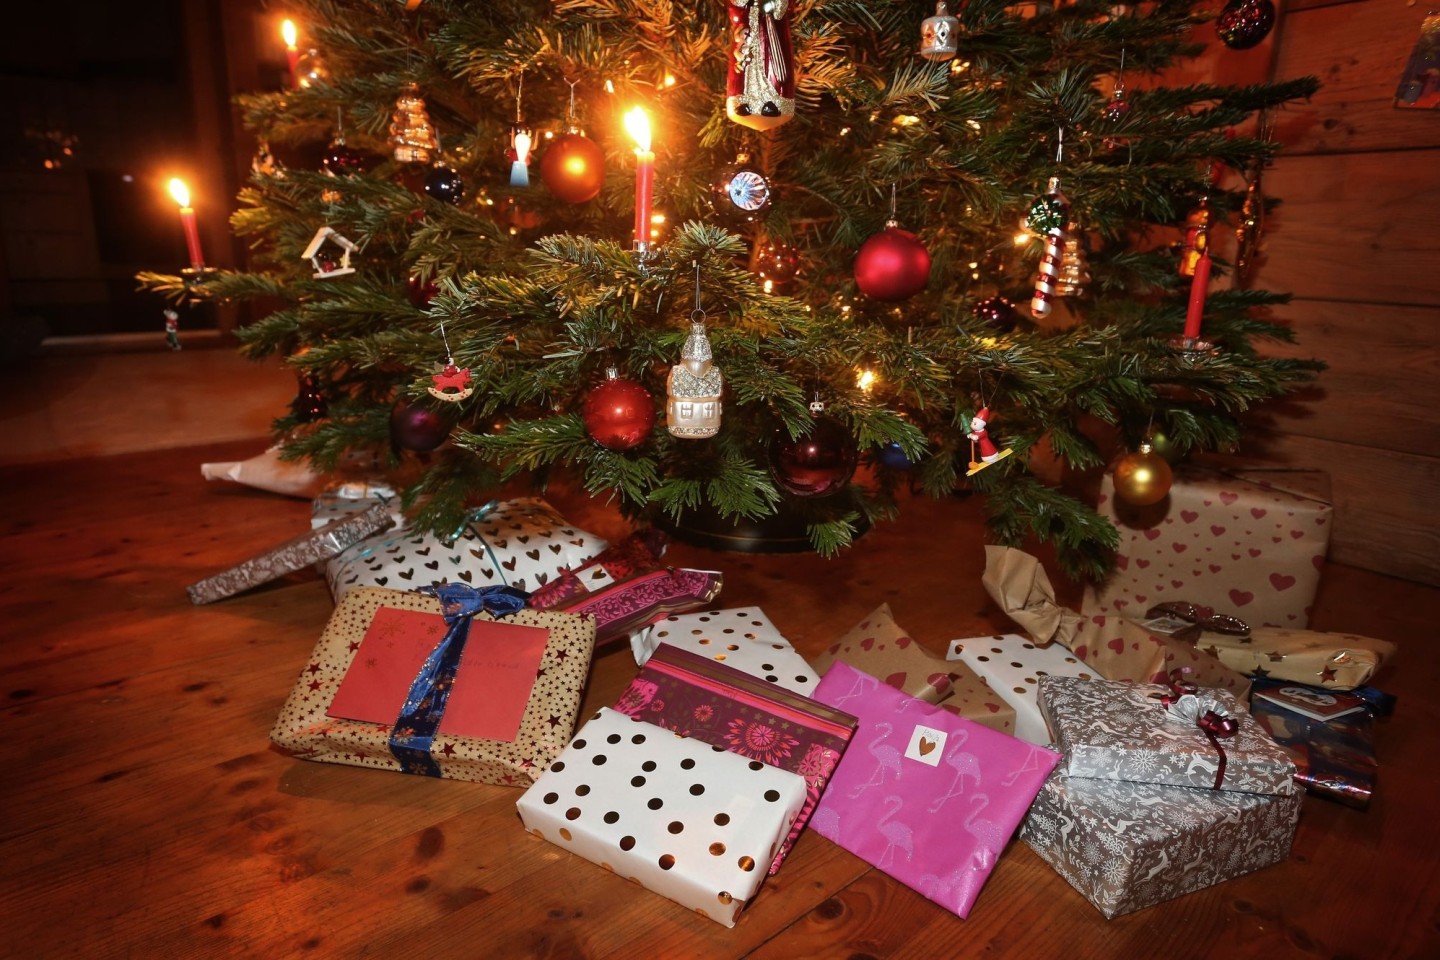 Weihnachtsgeschenke unter einem geschmückten Weihnachtsbaum.